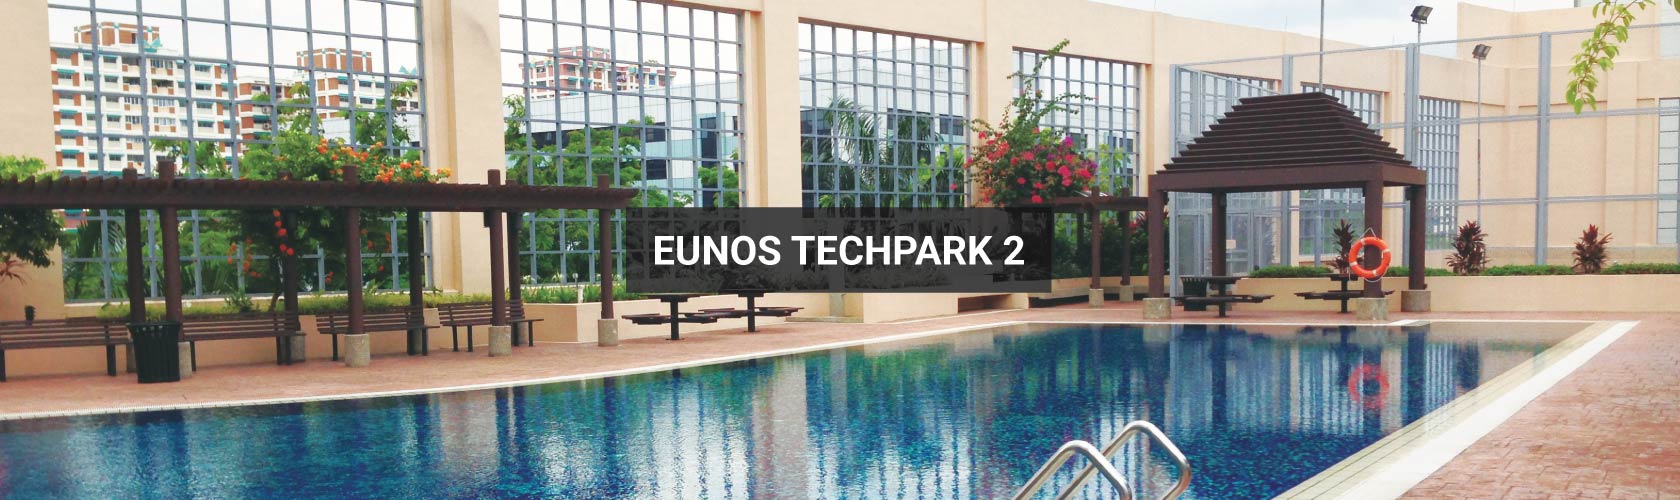 Eunos Techpark 2